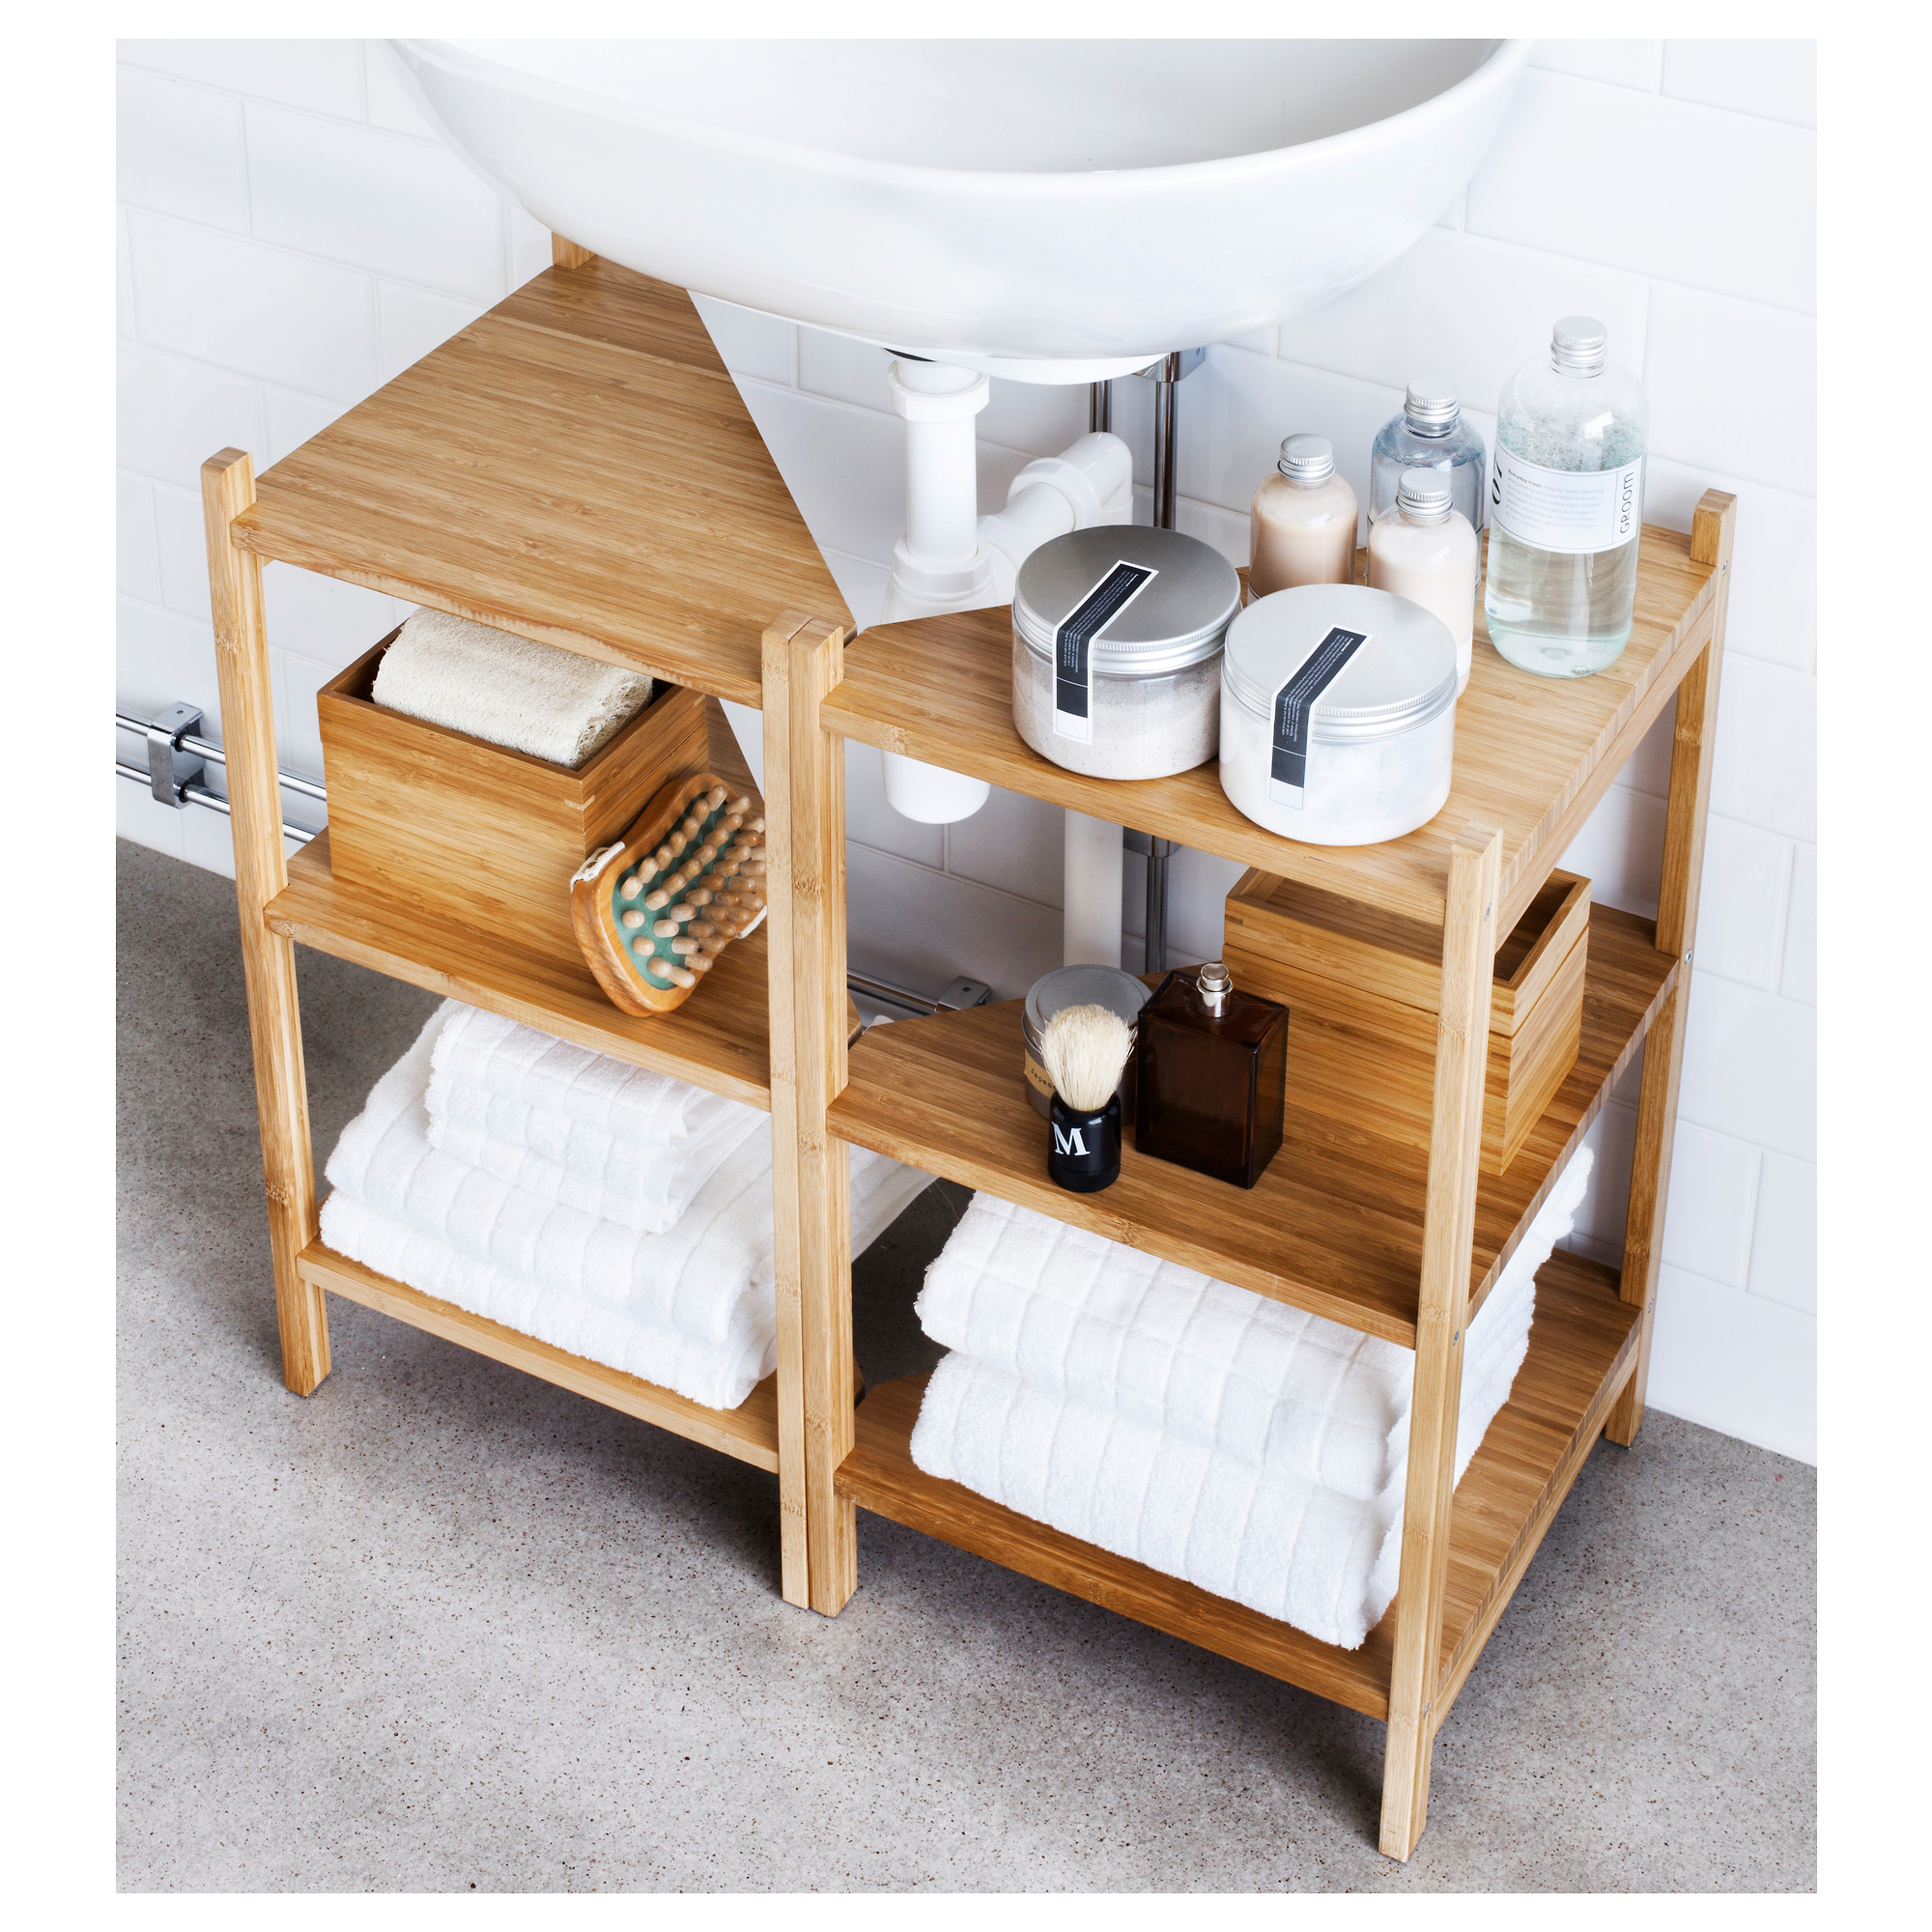 RÅGRUND wash-basin/corner shelf